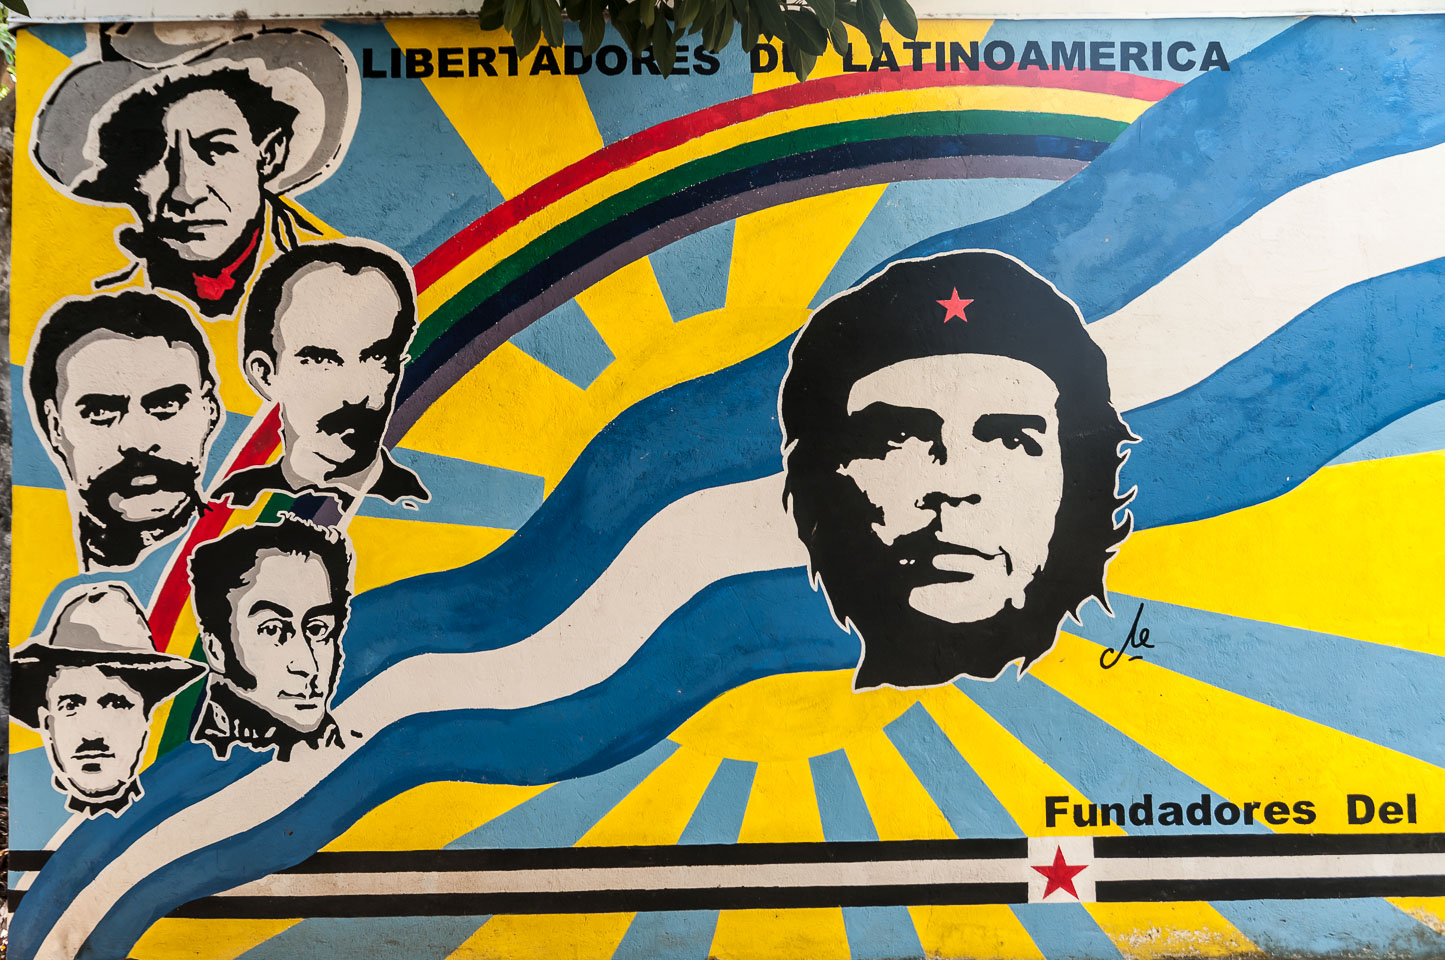 NI120030-Leon-Mural-of-the-Liberators-of-latin-America.jpg